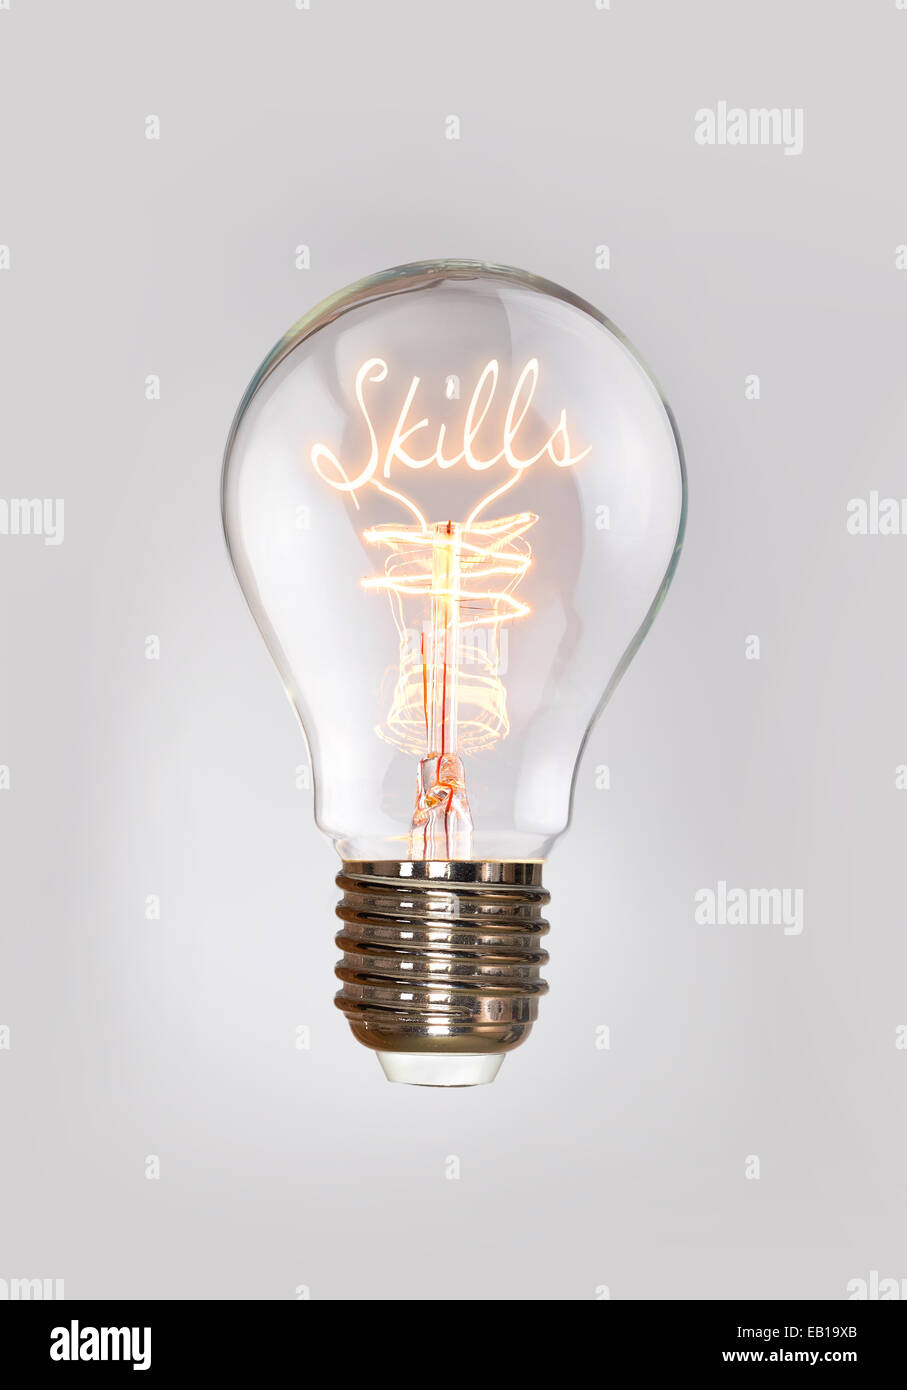 Skills-Konzept in ein Filament-Glühbirne. Stockfoto